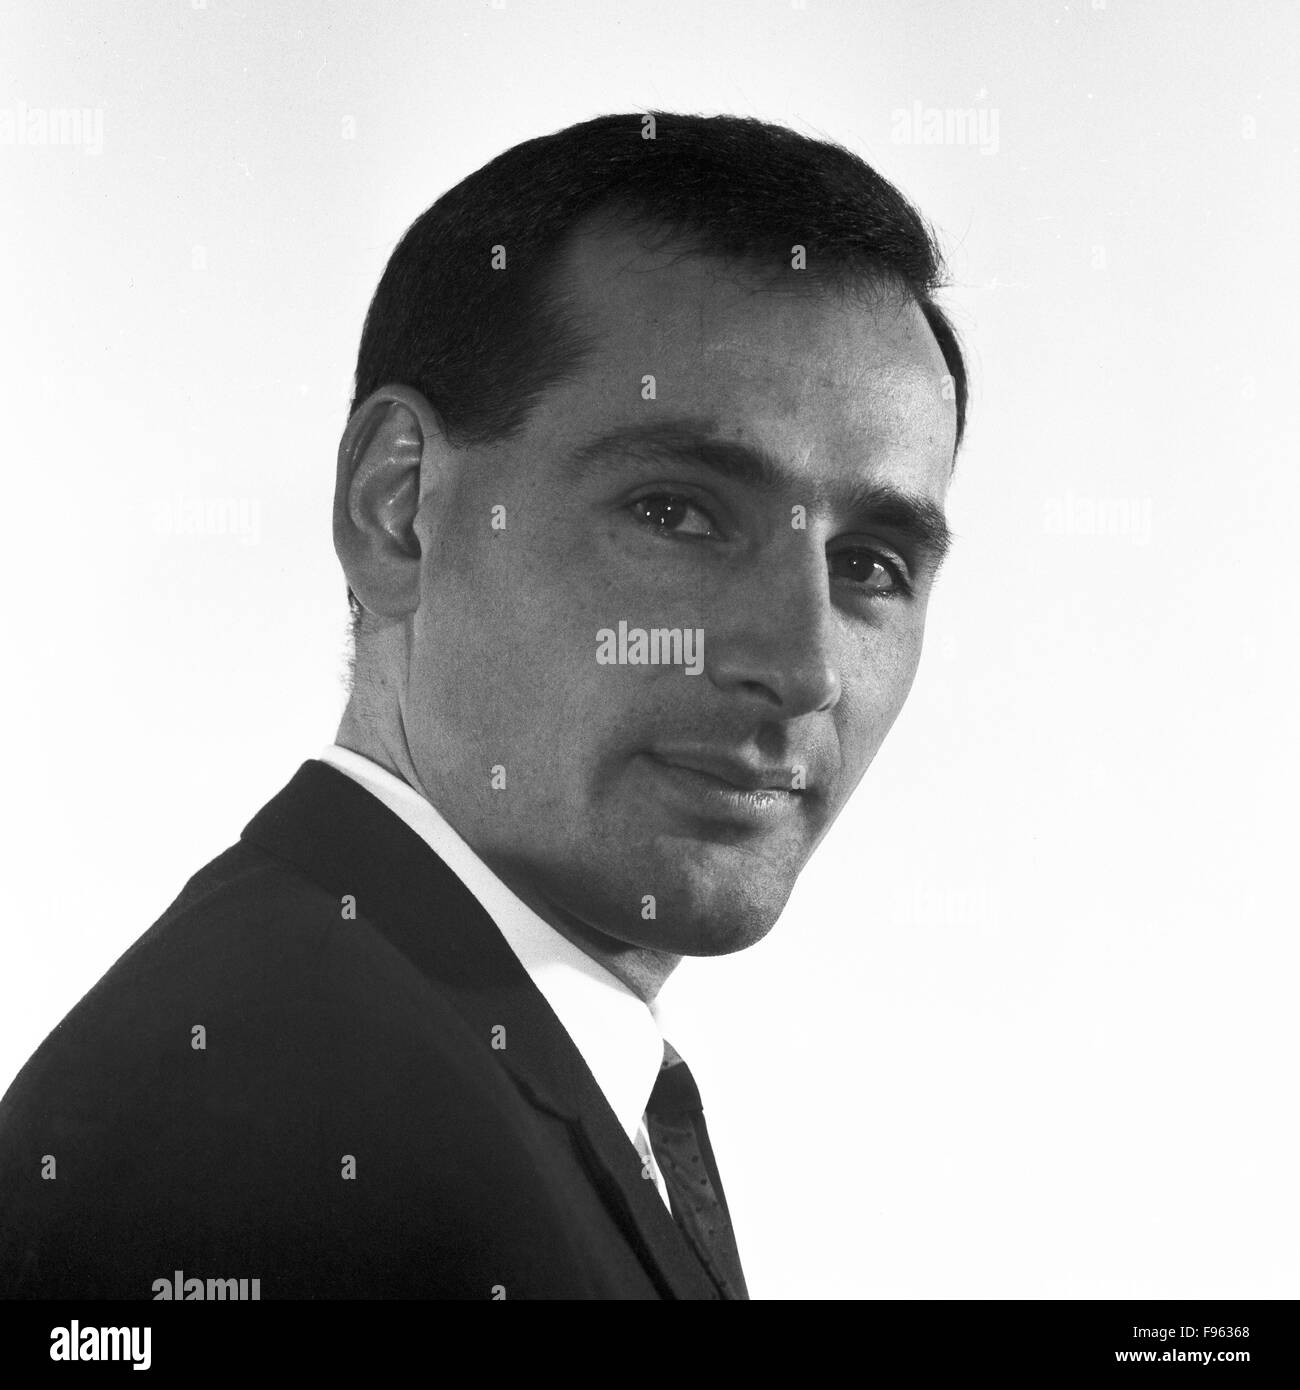 Deutscher Schauspieler Rudolf Möller, Porträt, Deutschland 1968. The German actor Rudolf Moeller, Portrait, Germany 1968. Stock Photo